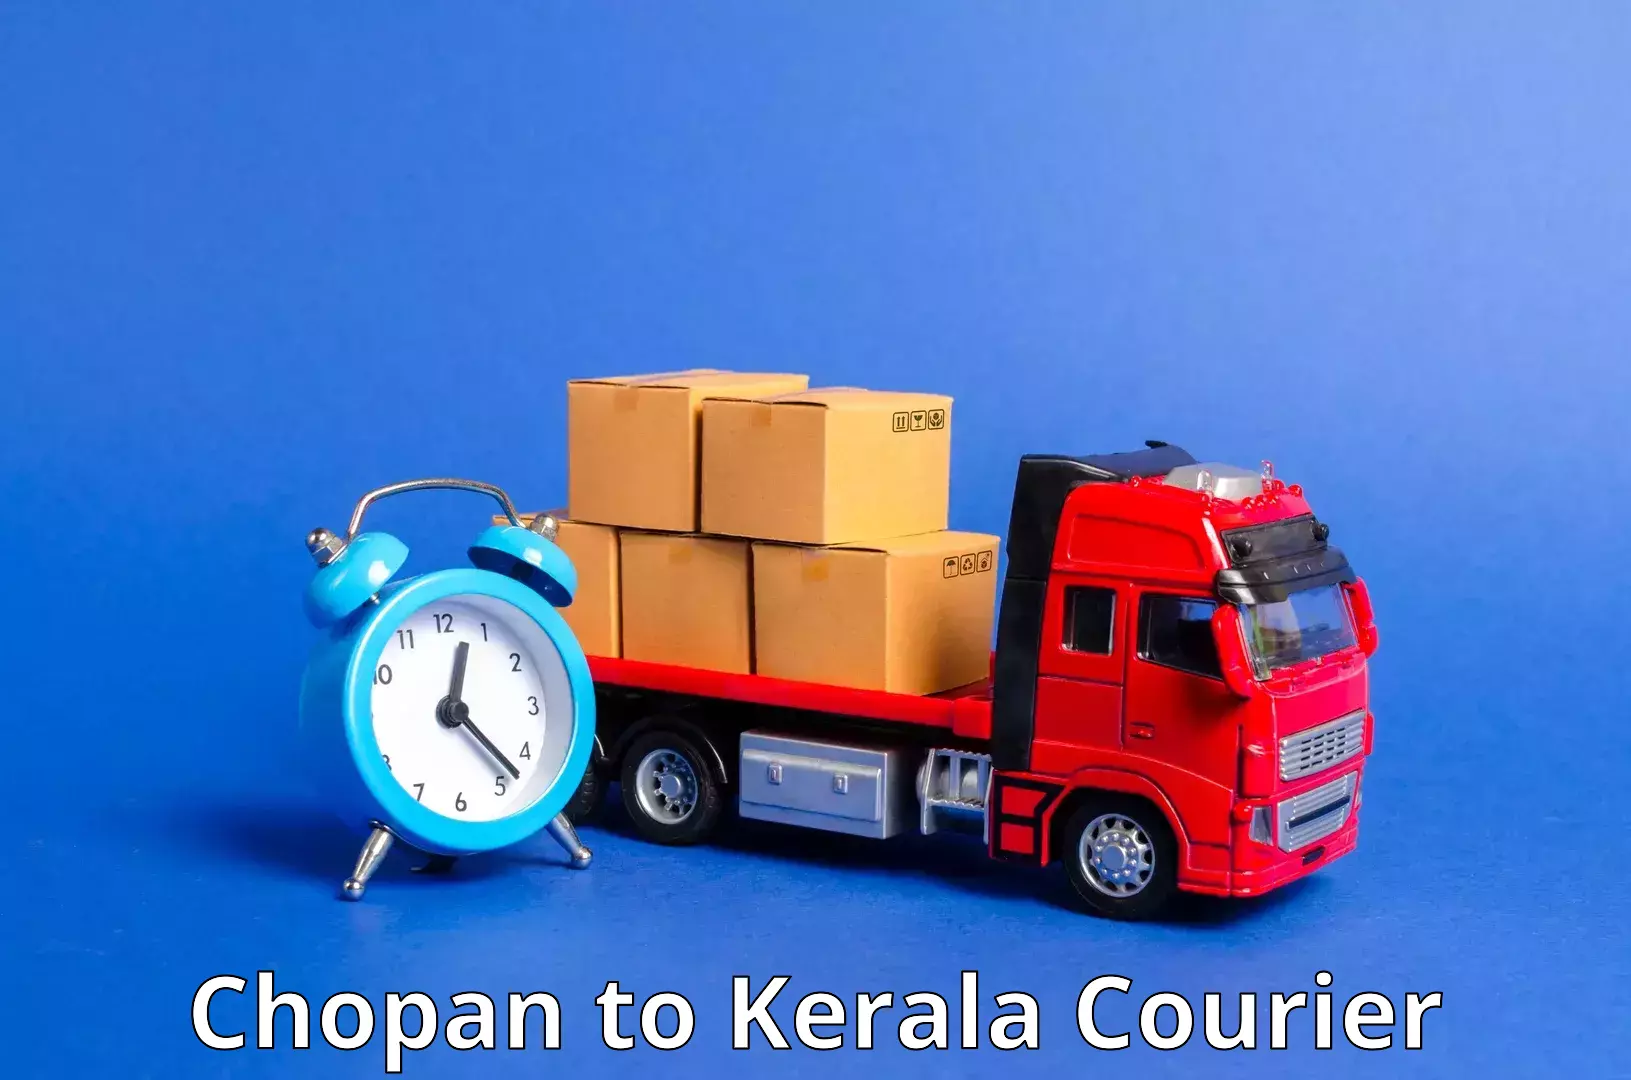 Customized shipping options Chopan to Thiruvananthapuram